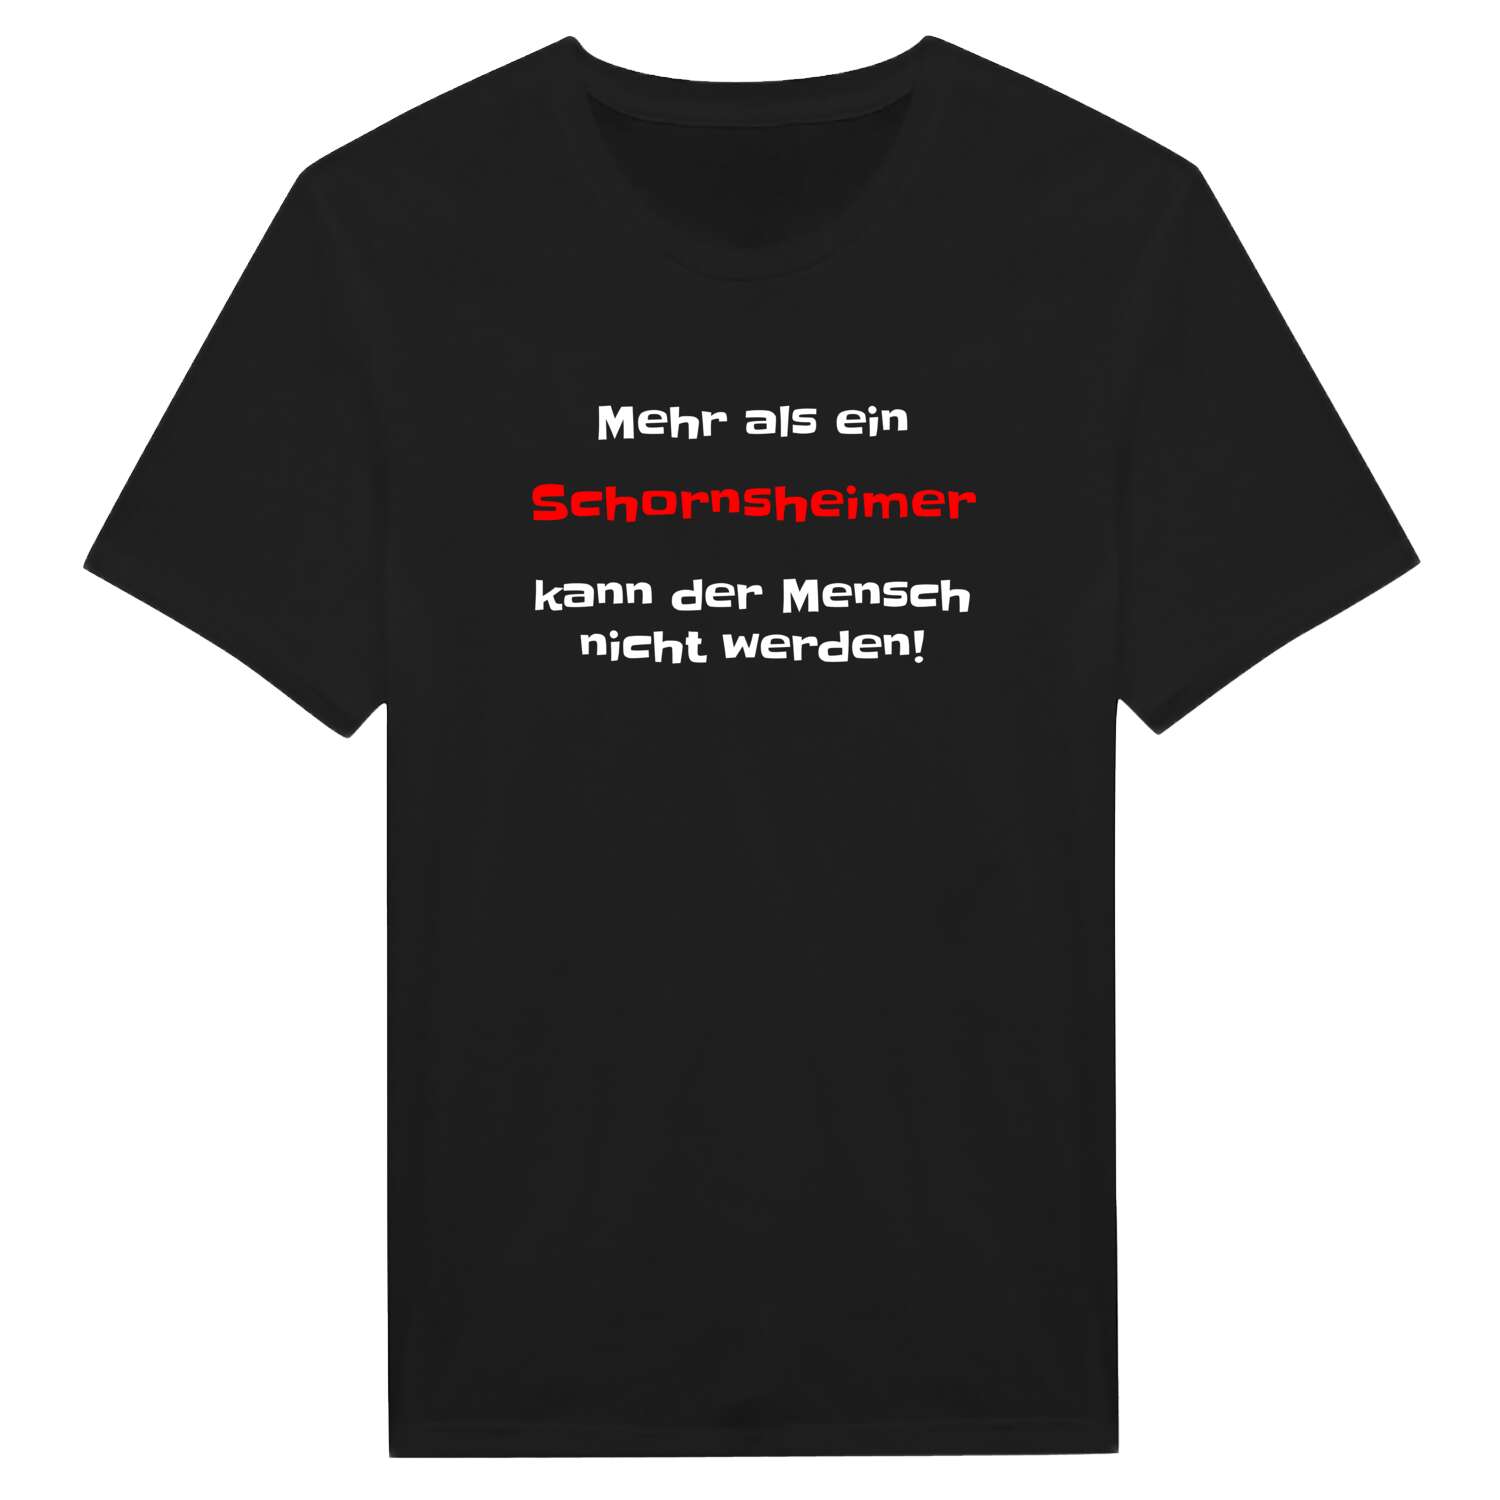 Schornsheim T-Shirt »Mehr als ein«